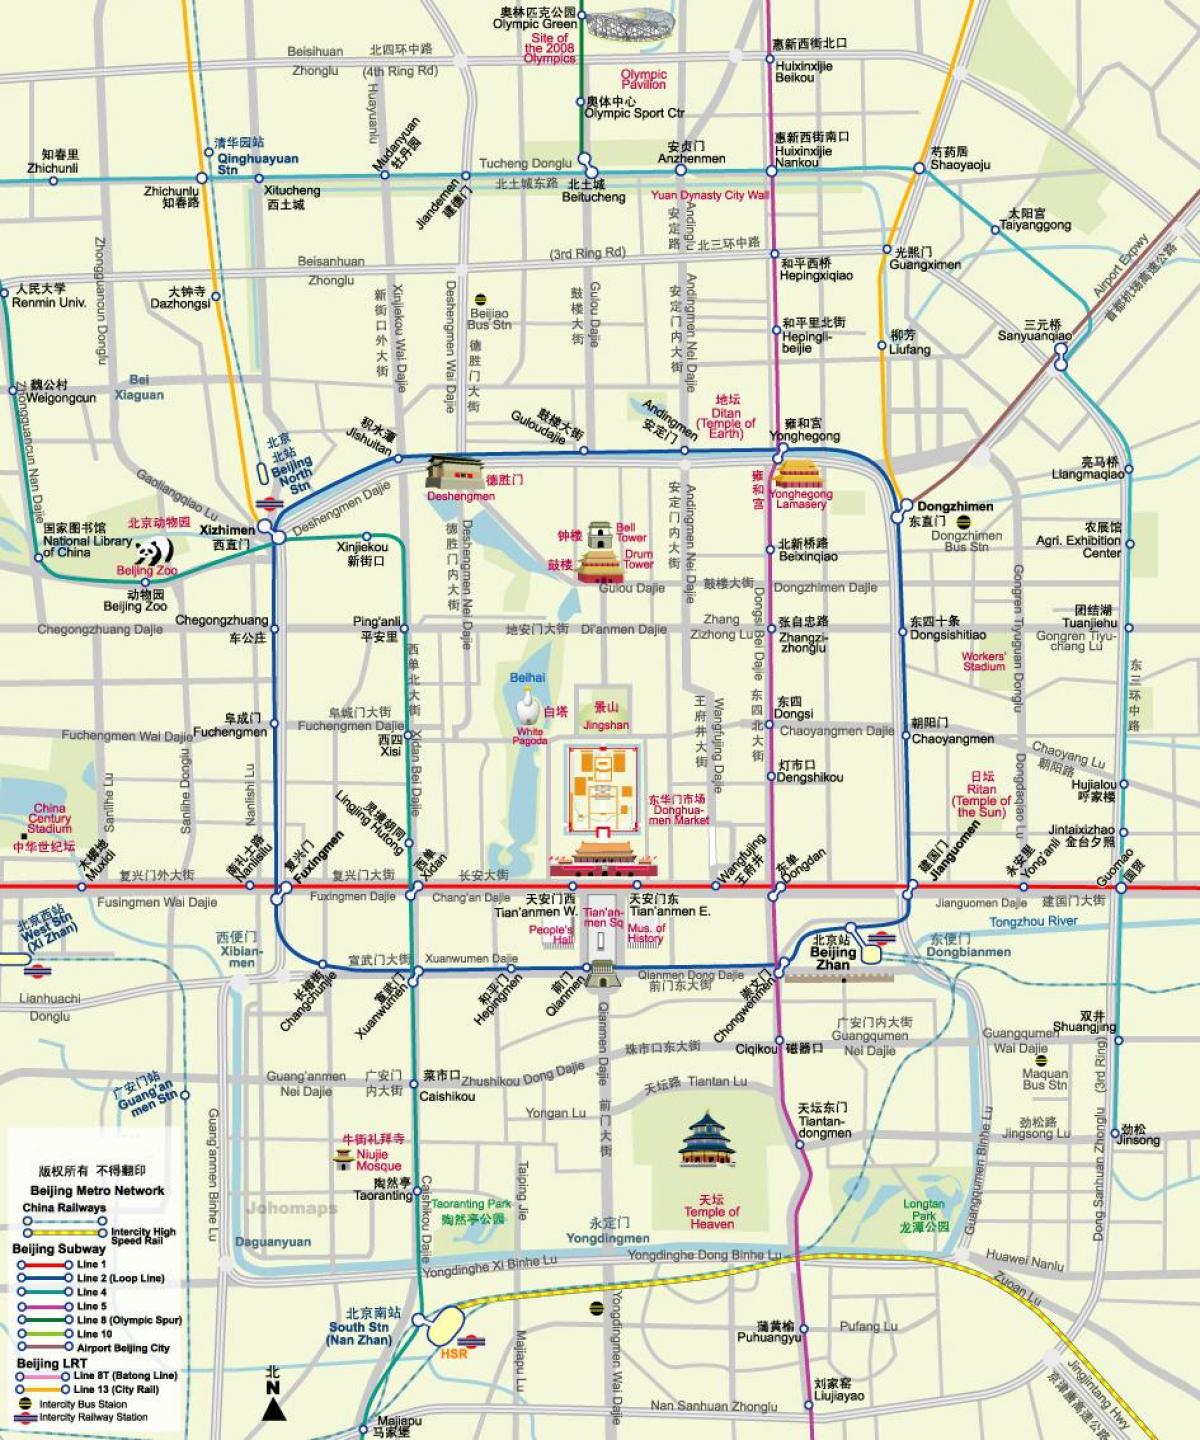 kaart van Beijing metro kaart met toerisme-aantreklikhede